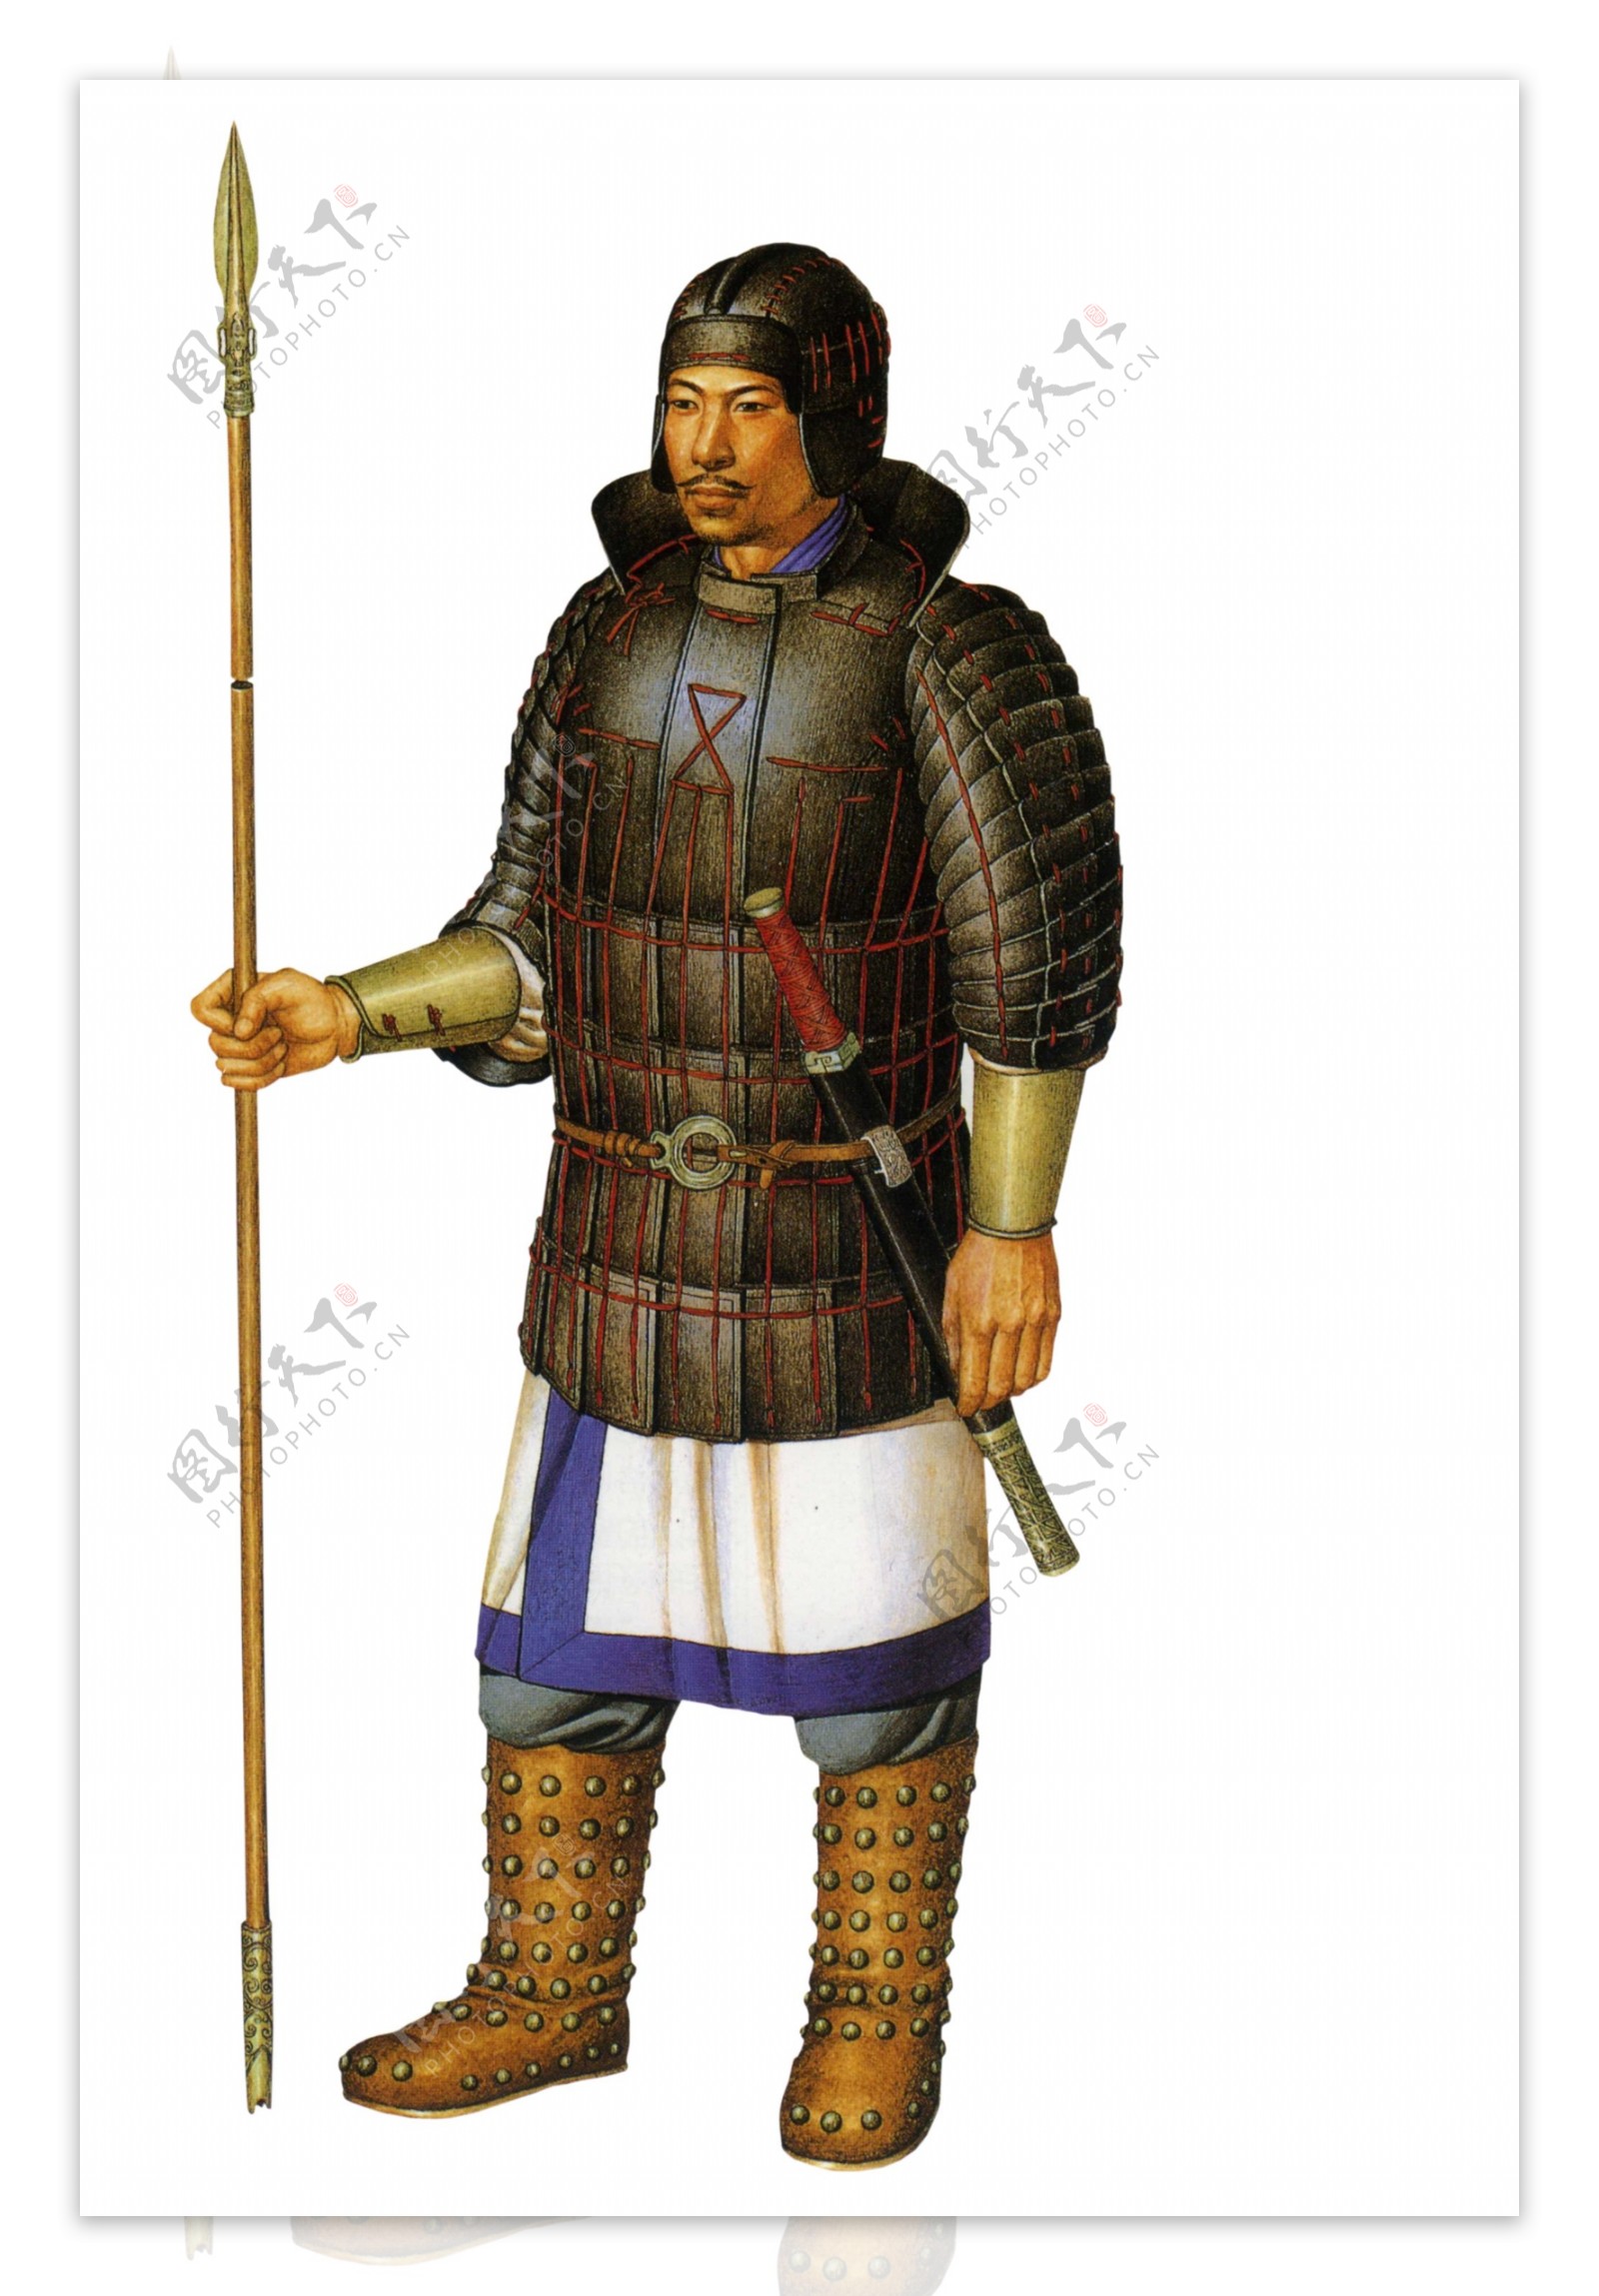 仿中国古代将军盔甲cos武将兵古装铠甲头盔蒙古戏服 演出服装可穿-阿里巴巴